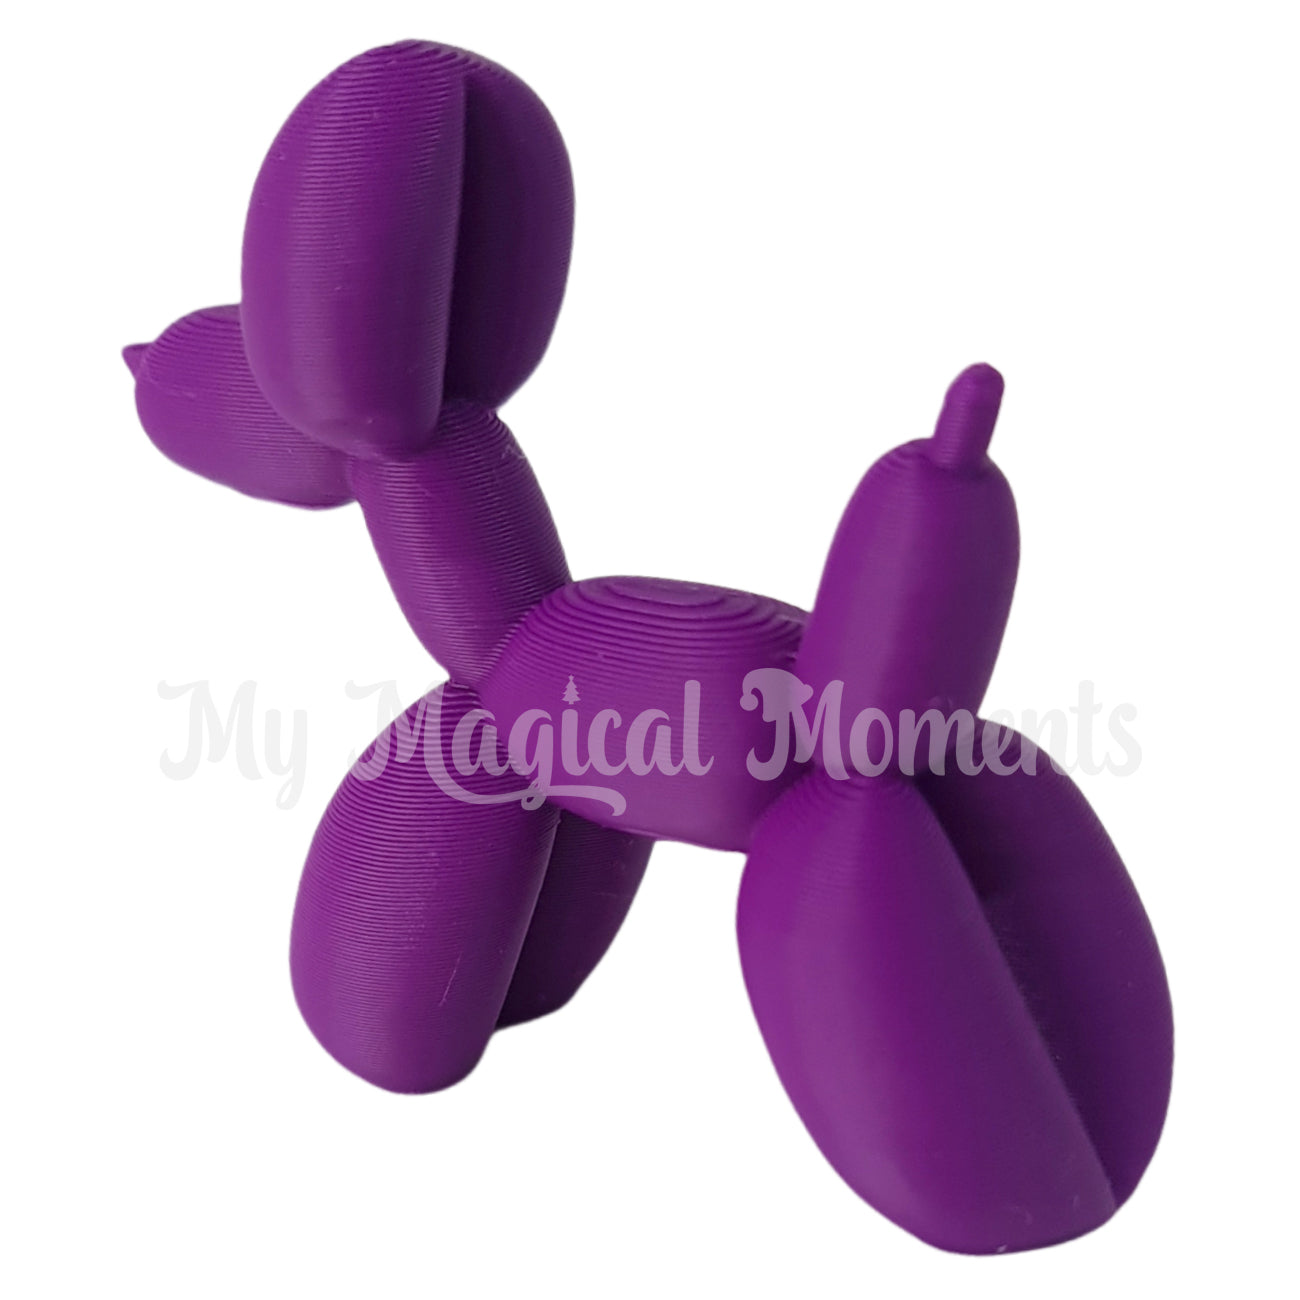 Miniature purple balloon animal